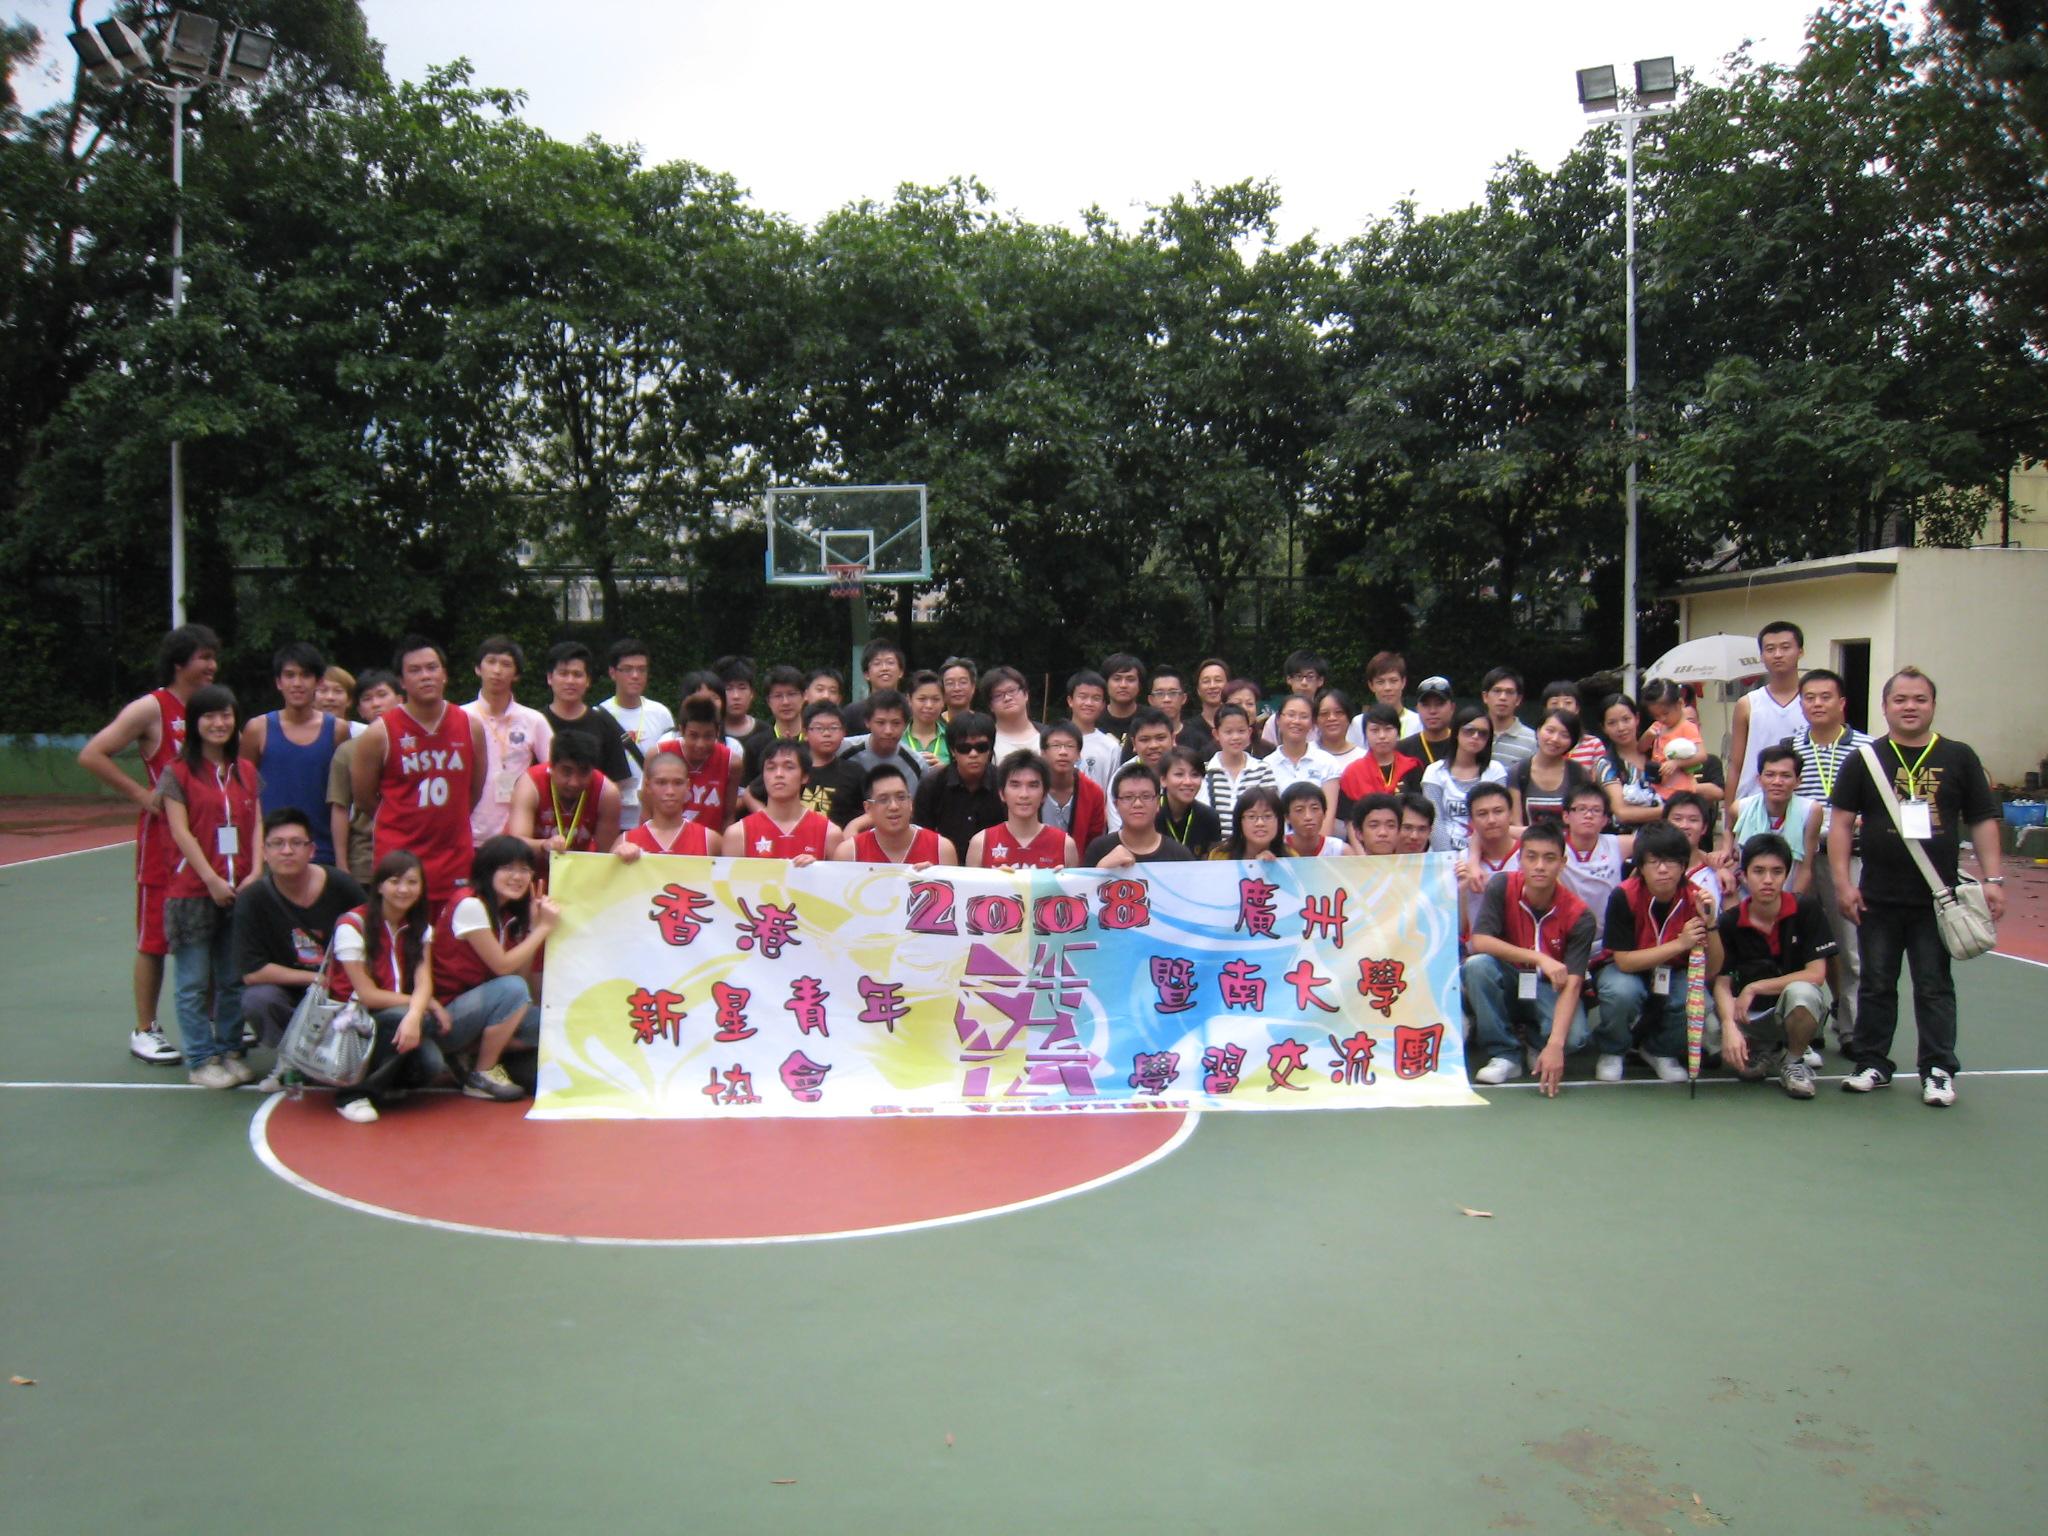 Hong Kong Star Youth Association Delegation greeted by Jinan University